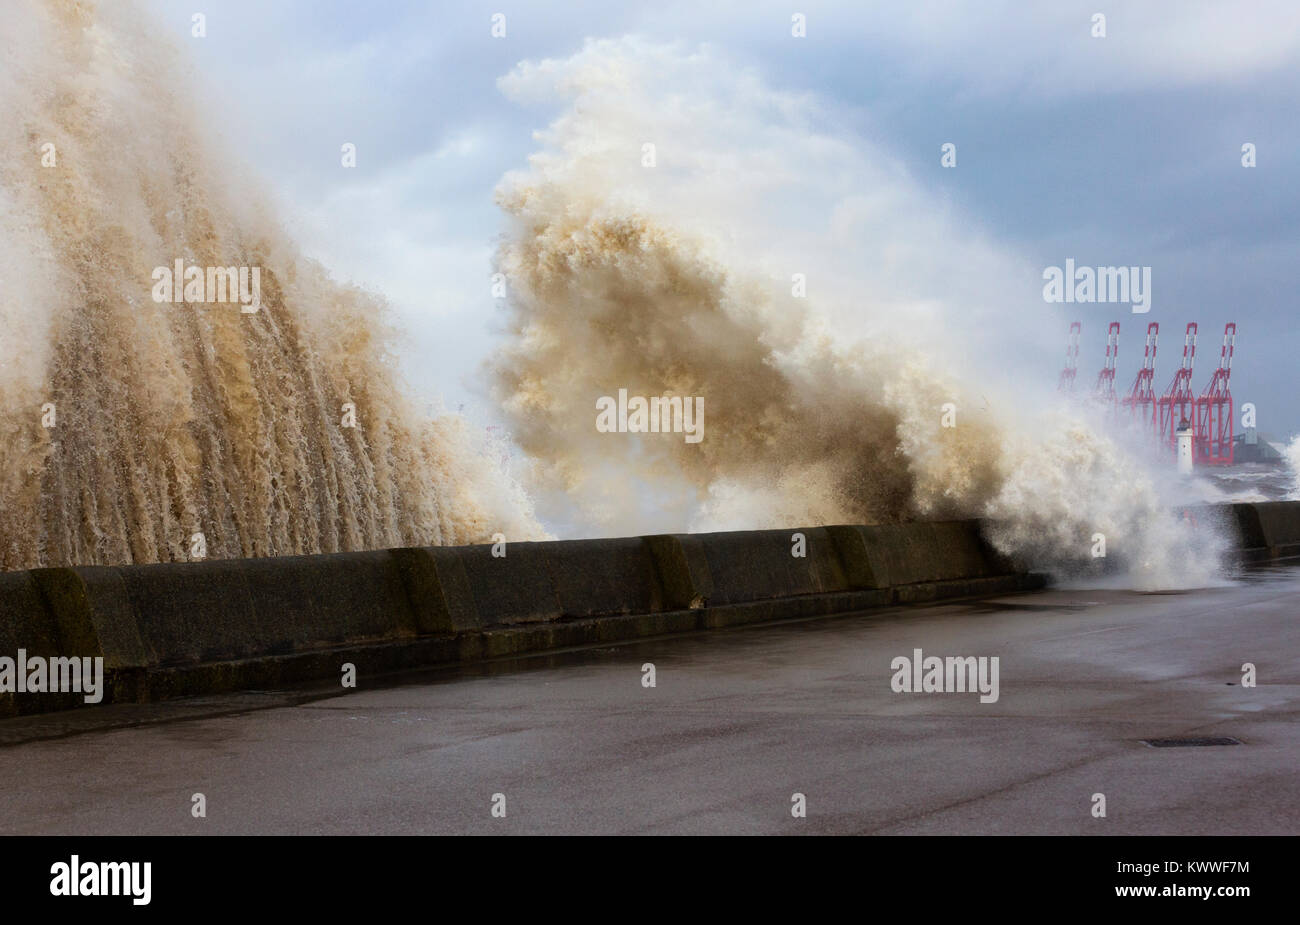 Mare mosso a New Brighton durante la tempesta Eleanore Foto Stock